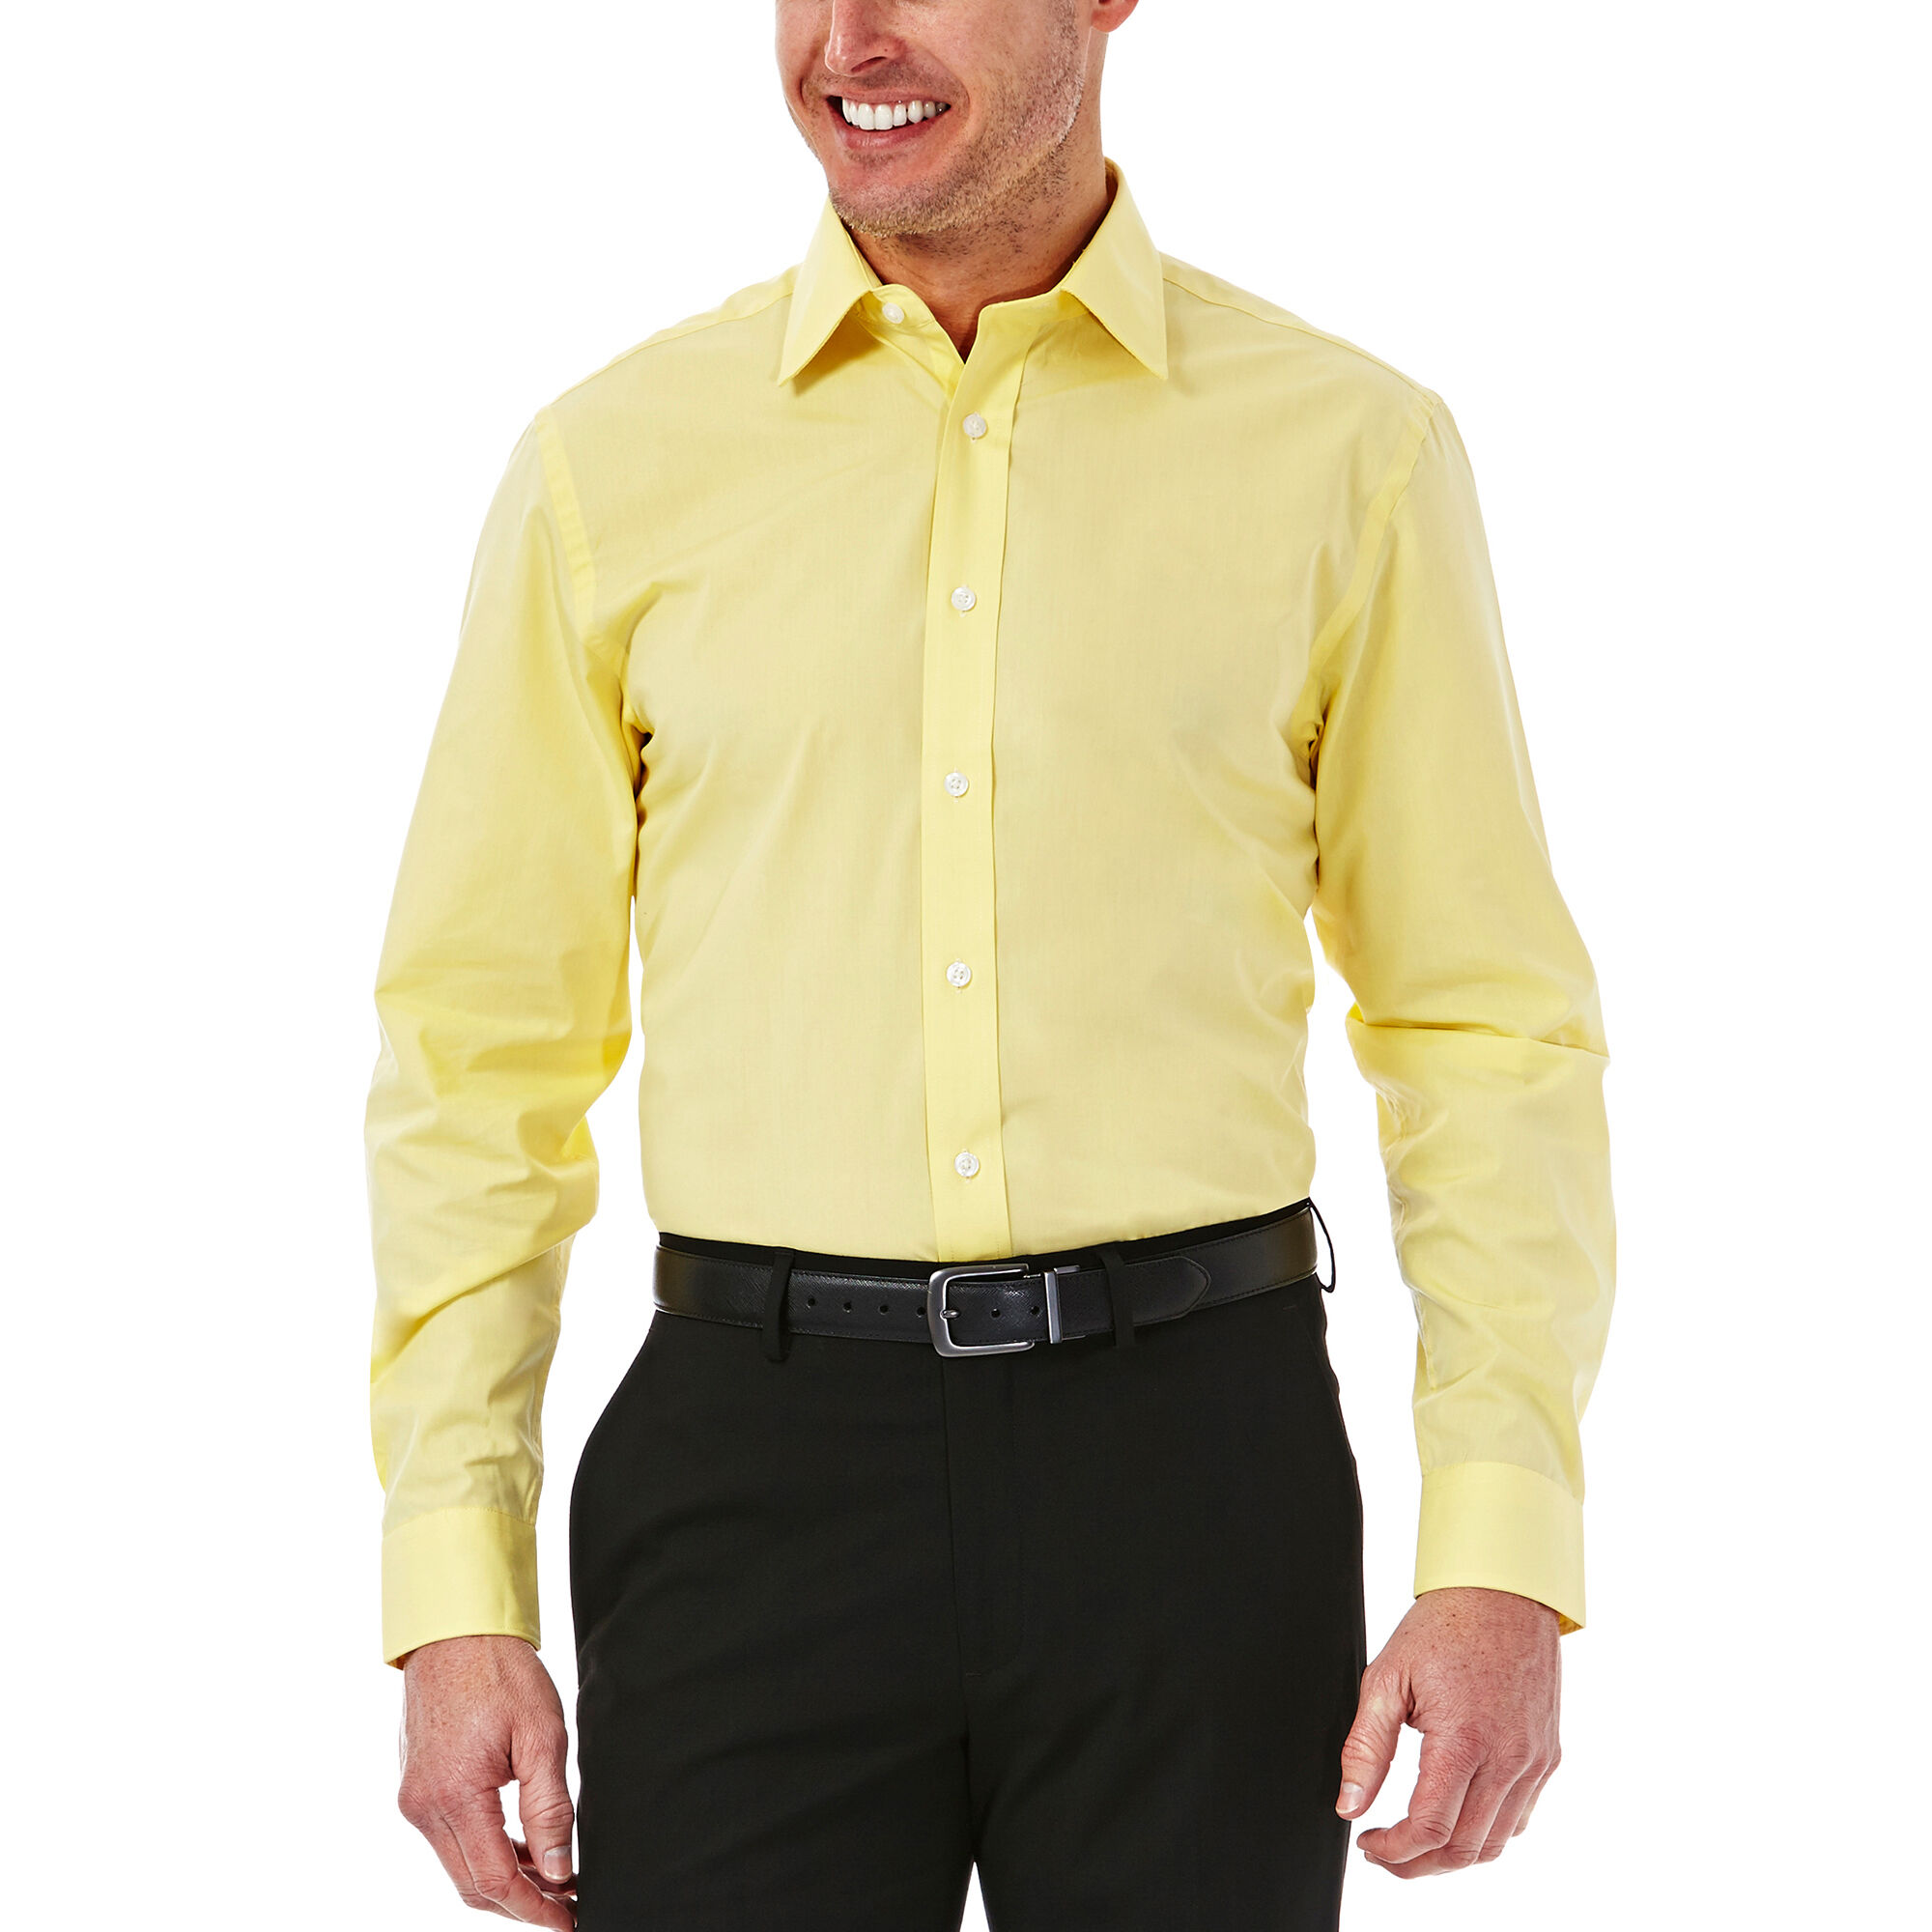 light yellow dress shirt